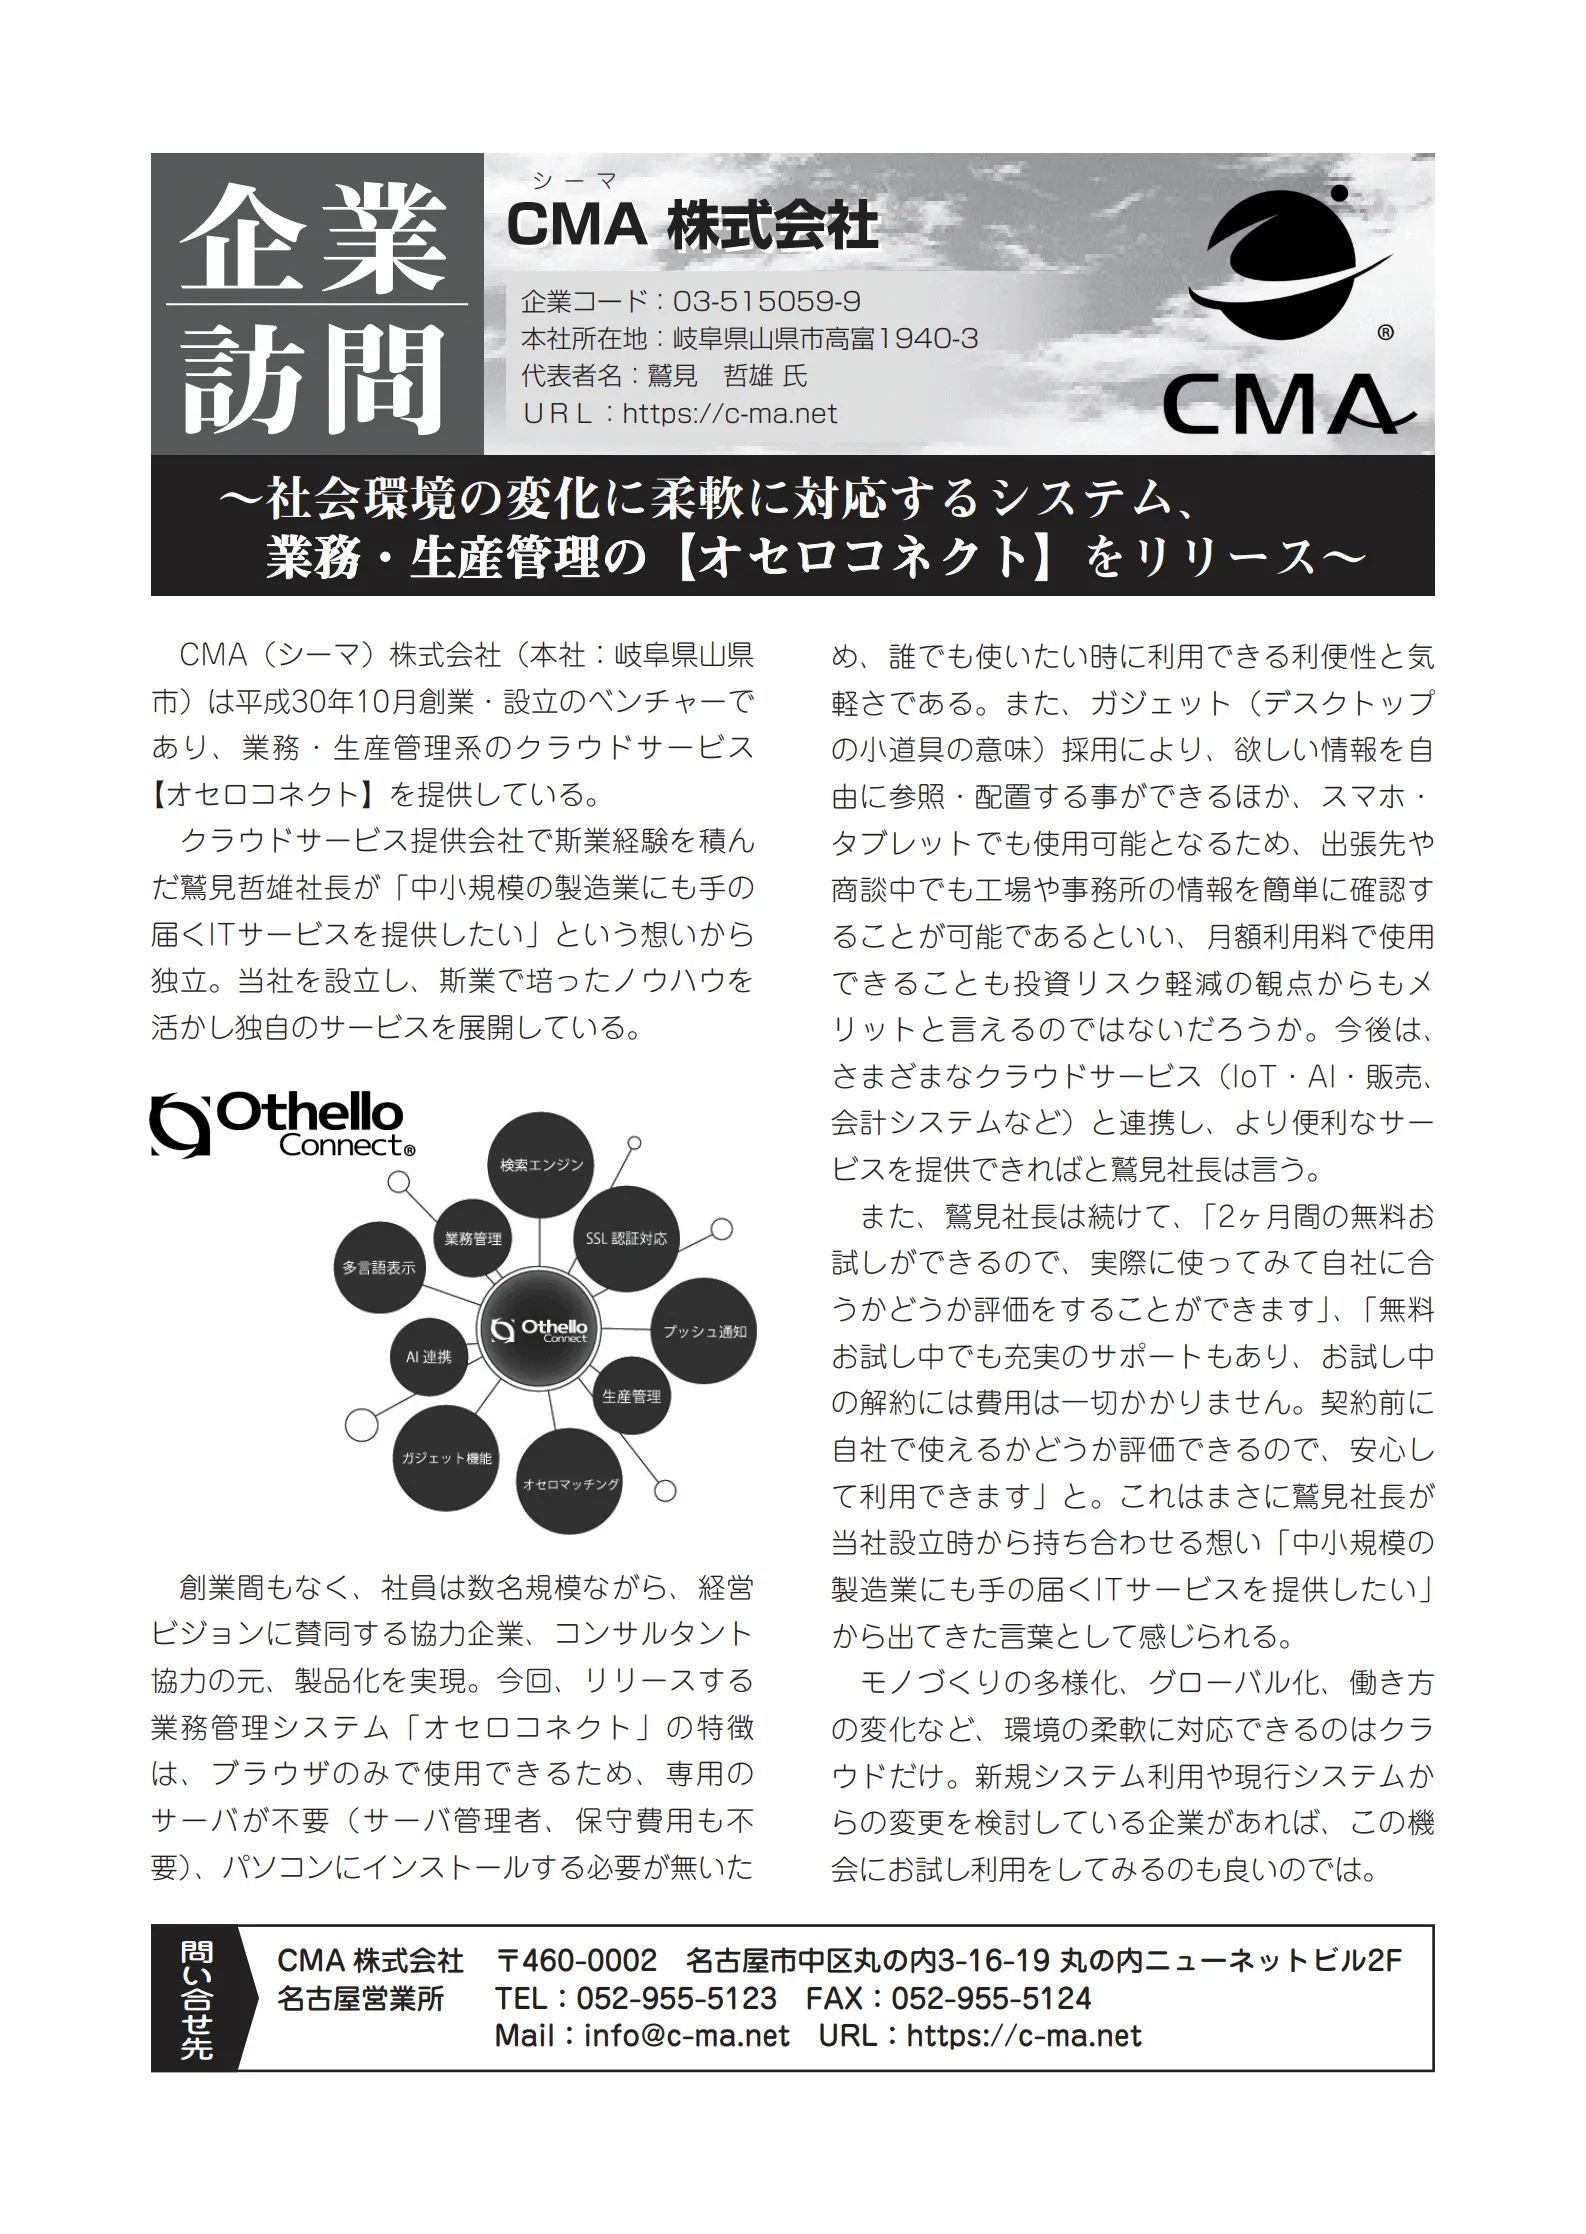 「東京商工リサーチ（中部版）」に、弊社および弊社サービス「Othello Connect」が掲載されました。